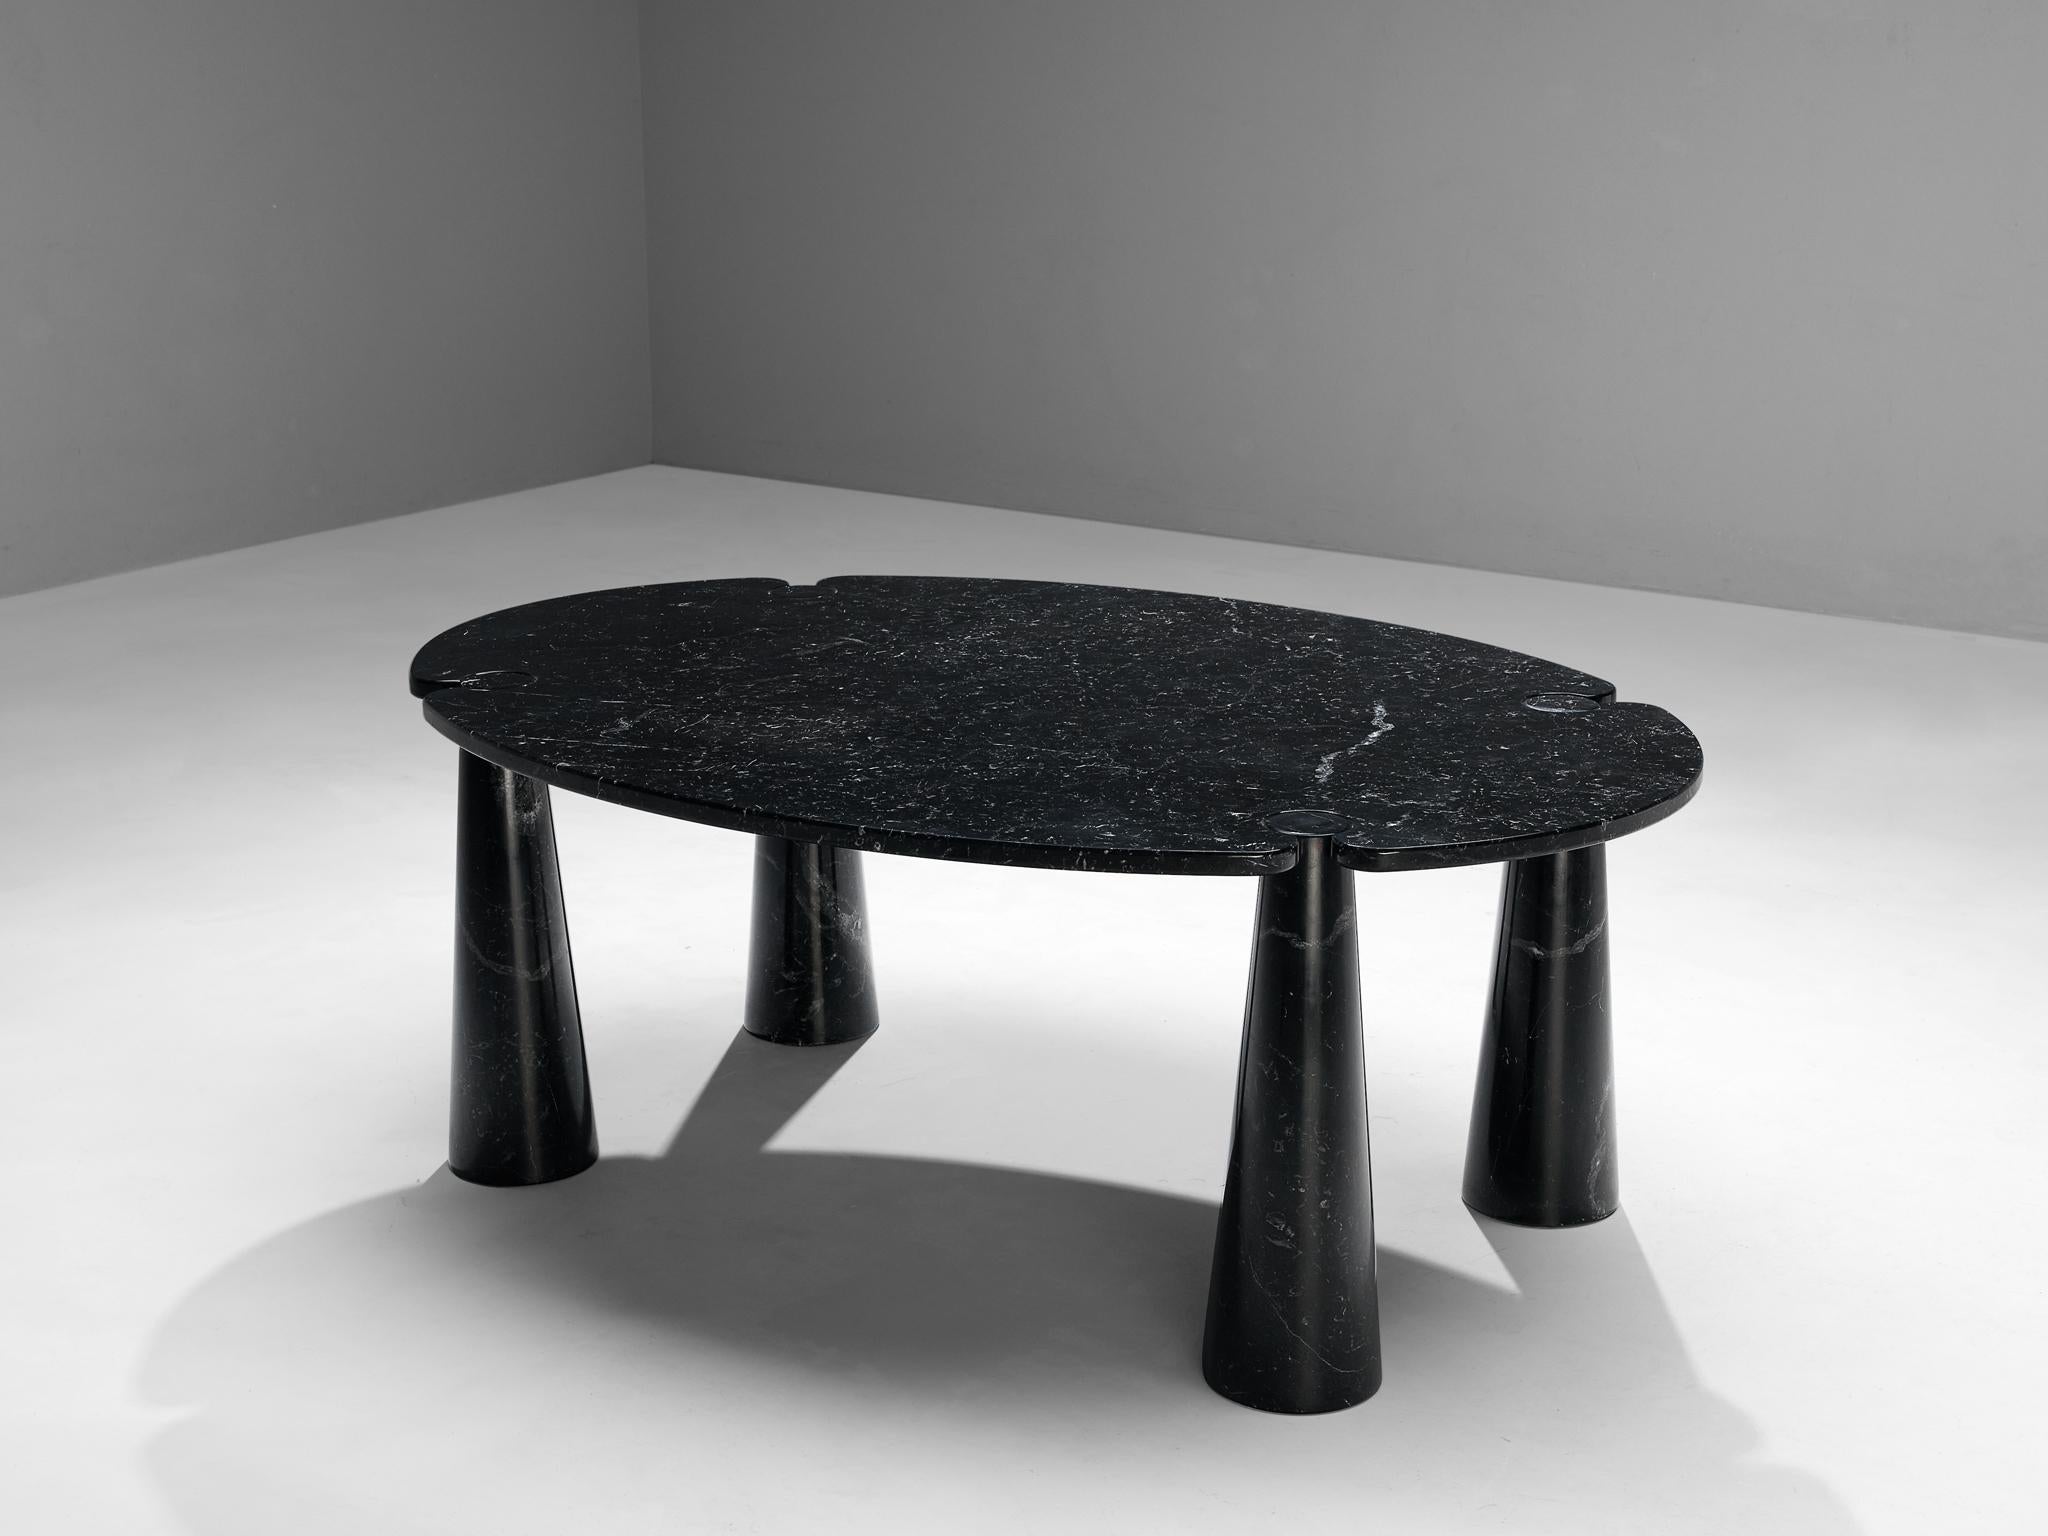 Angelo Mangiarotti für Skipper, Esstisch 'Eros', Marquina-Marmor, 1971

Dieser skulpturale Tisch von Angelo Mangiarotti ist ein gekonntes Beispiel für postmodernes Design. Der Tisch ist in schwarzem Marquina-Marmor ausgeführt. Die runde Tischplatte